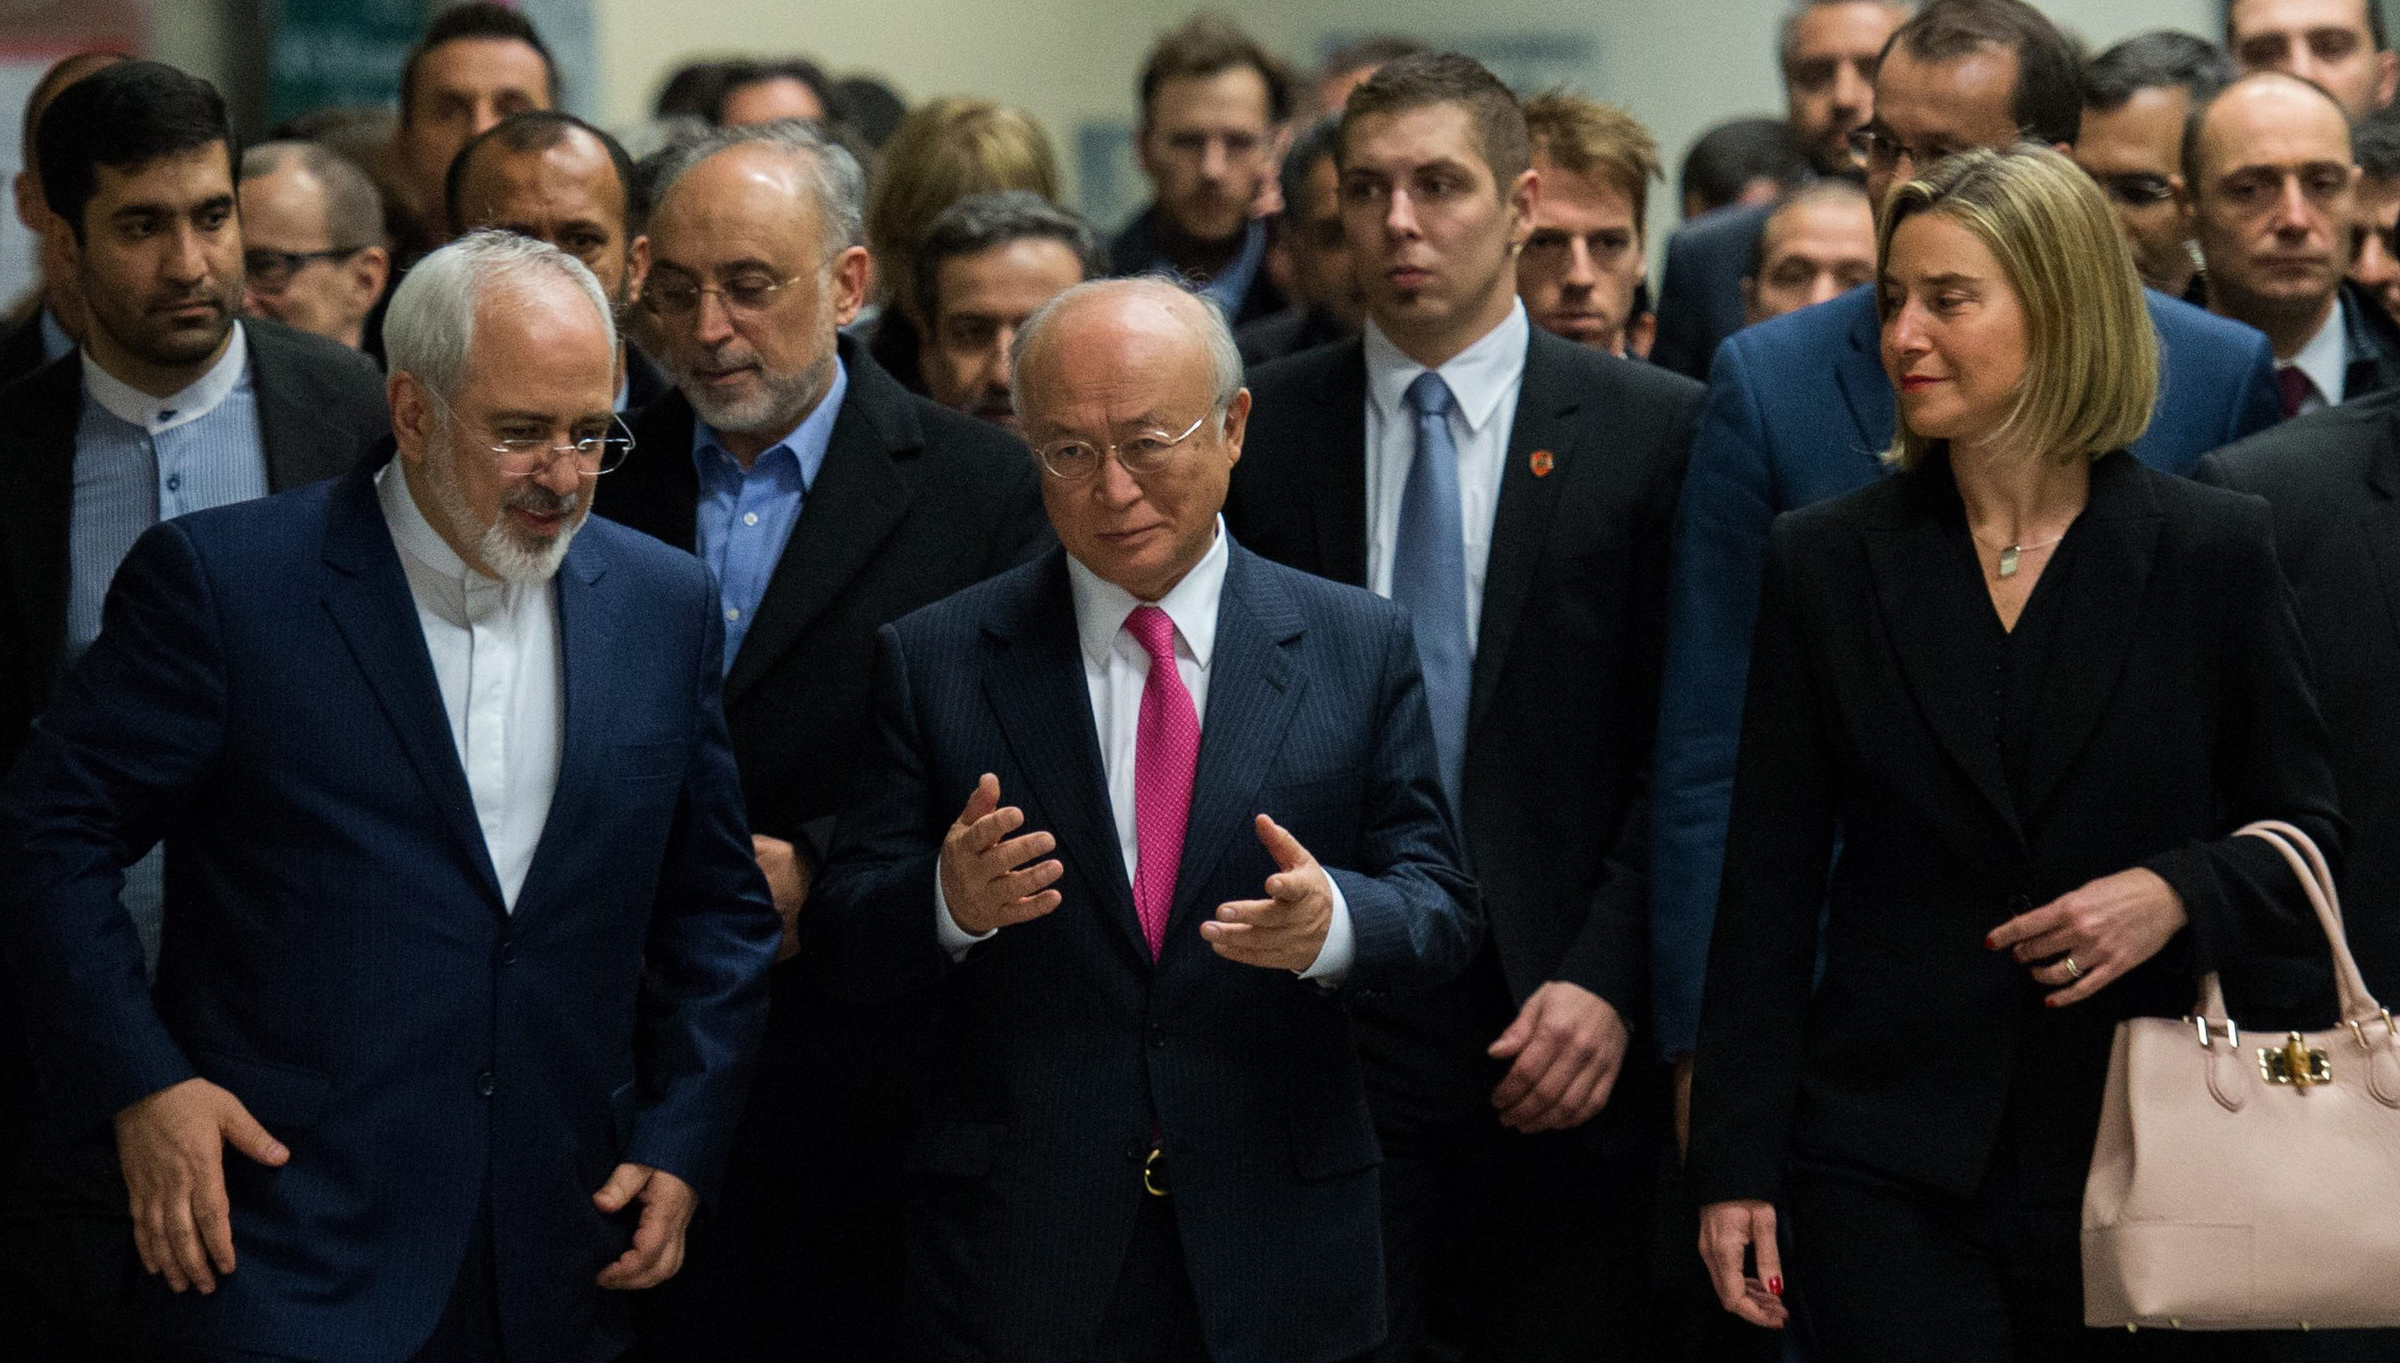 Gruppenfoto der Teilnehmer der Verhandlungen über das iranische Atomabkommen